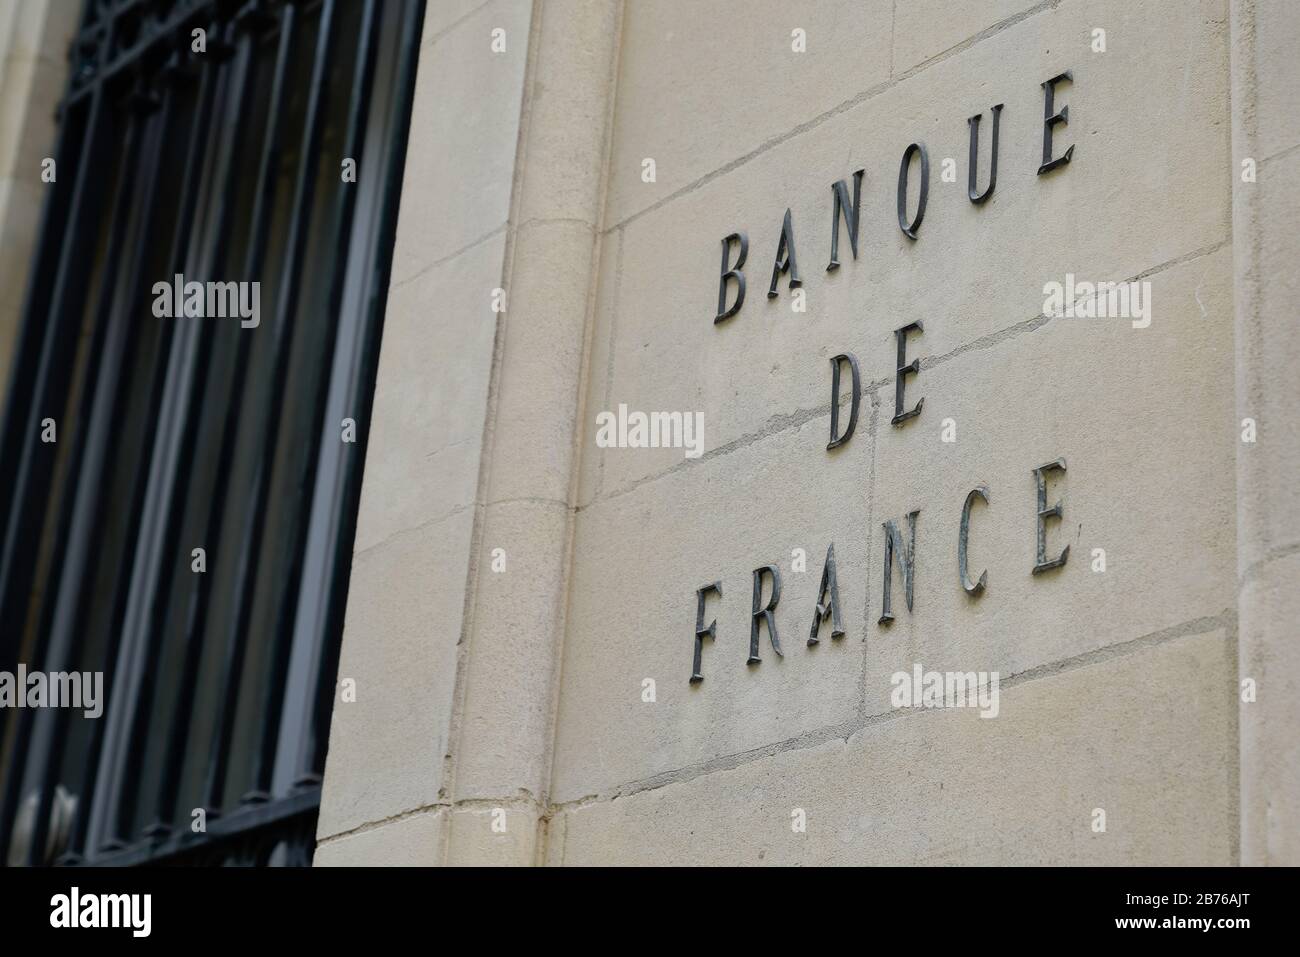 Bordeaux , Aquitaine / Francia - 10 10 2019 : Banque de France testo in edificio ufficiale Banca nazionale francese Foto Stock